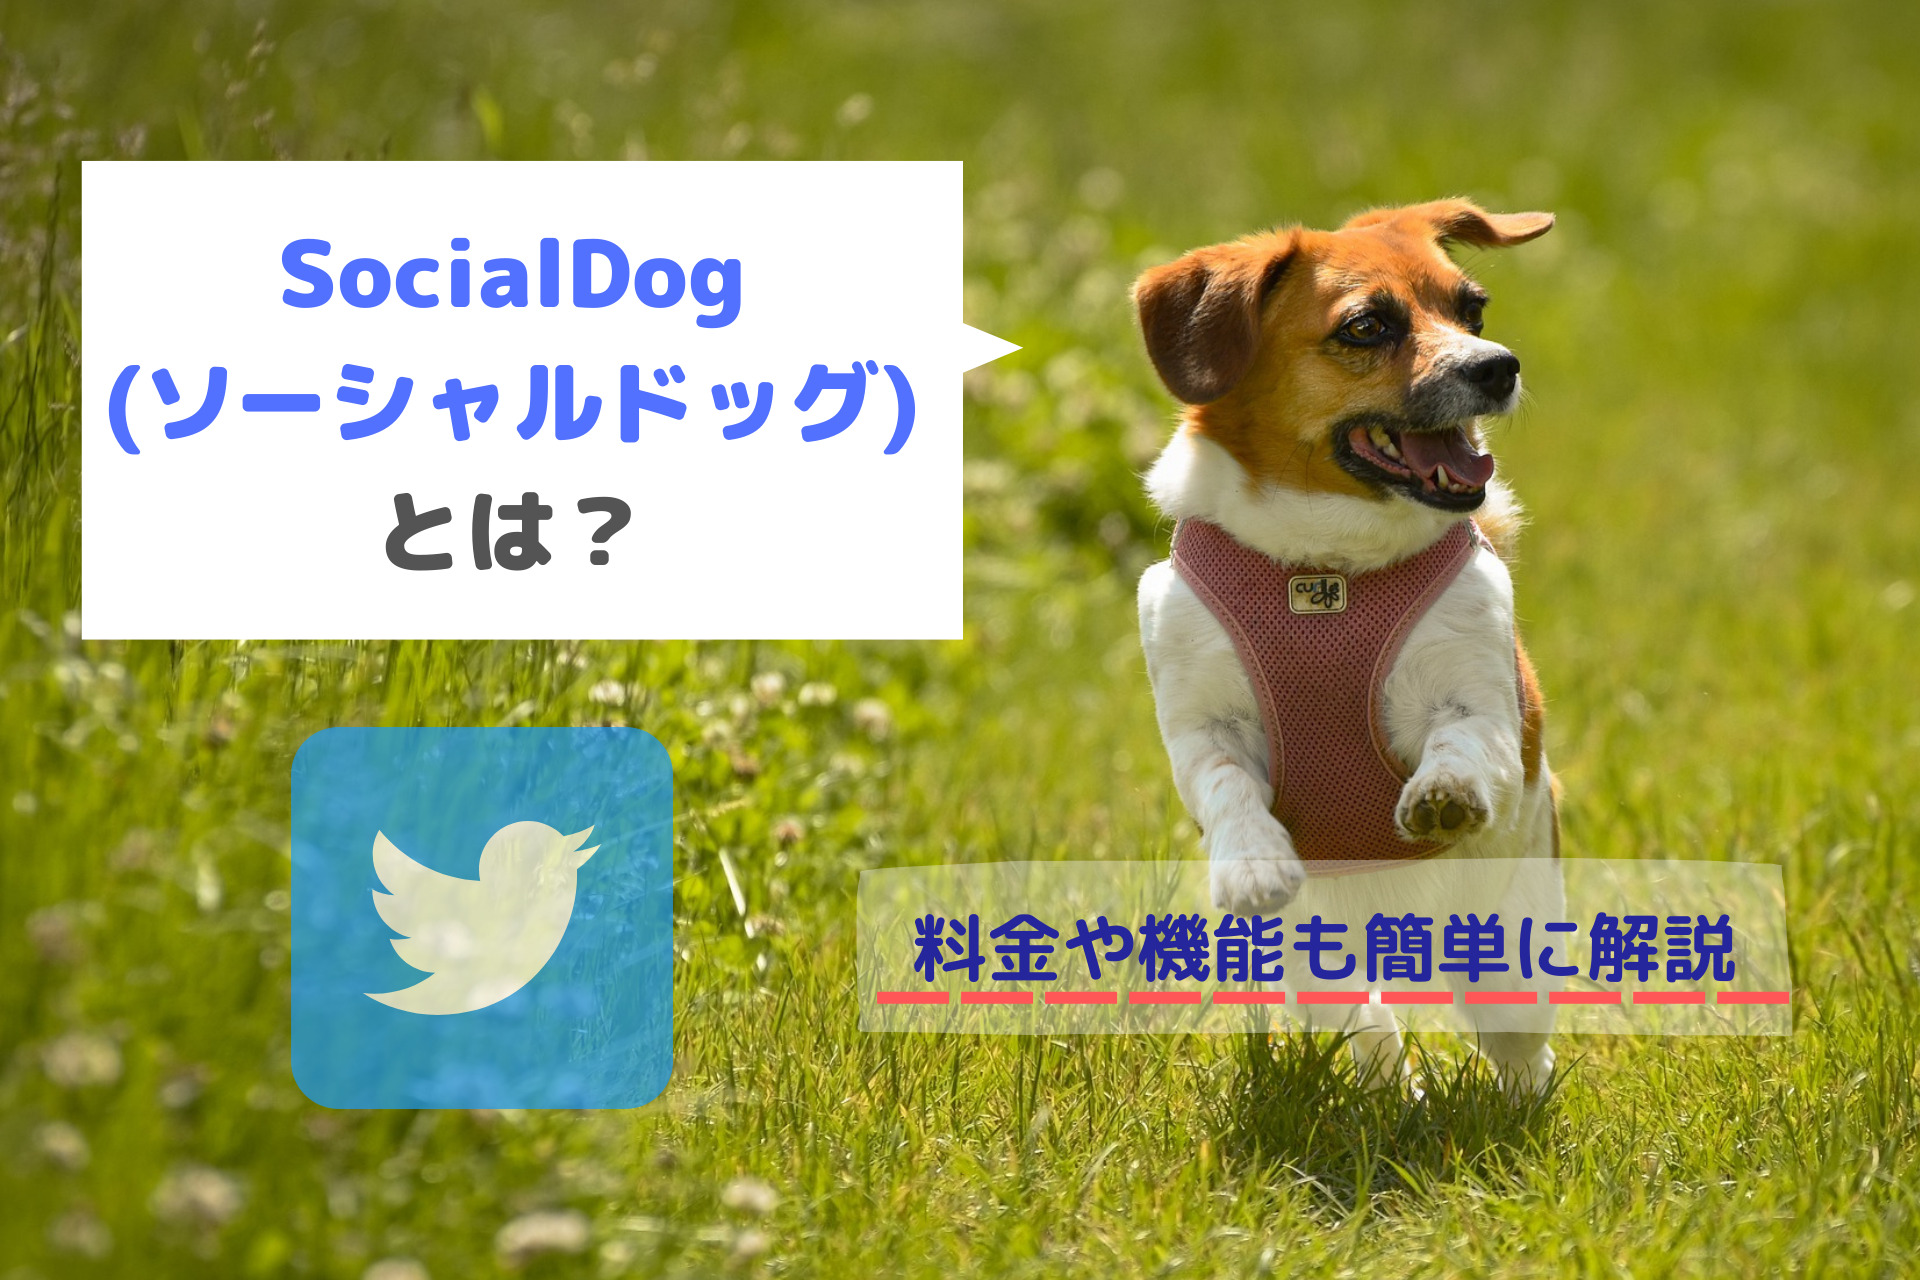 SocialDog(ソーシャルドッグ)とは